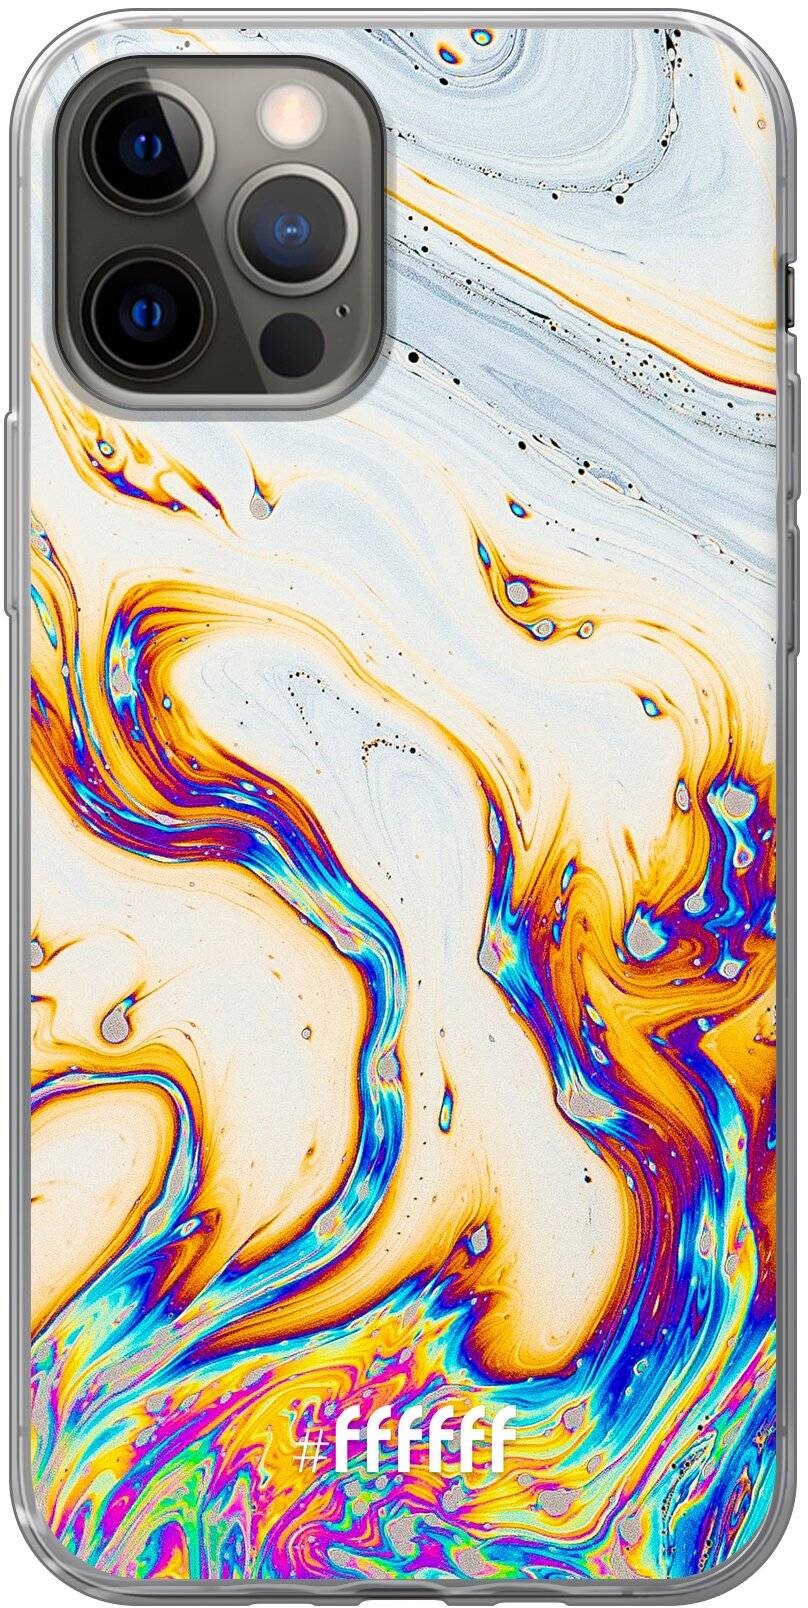 Bubble Texture iPhone 12 Pro